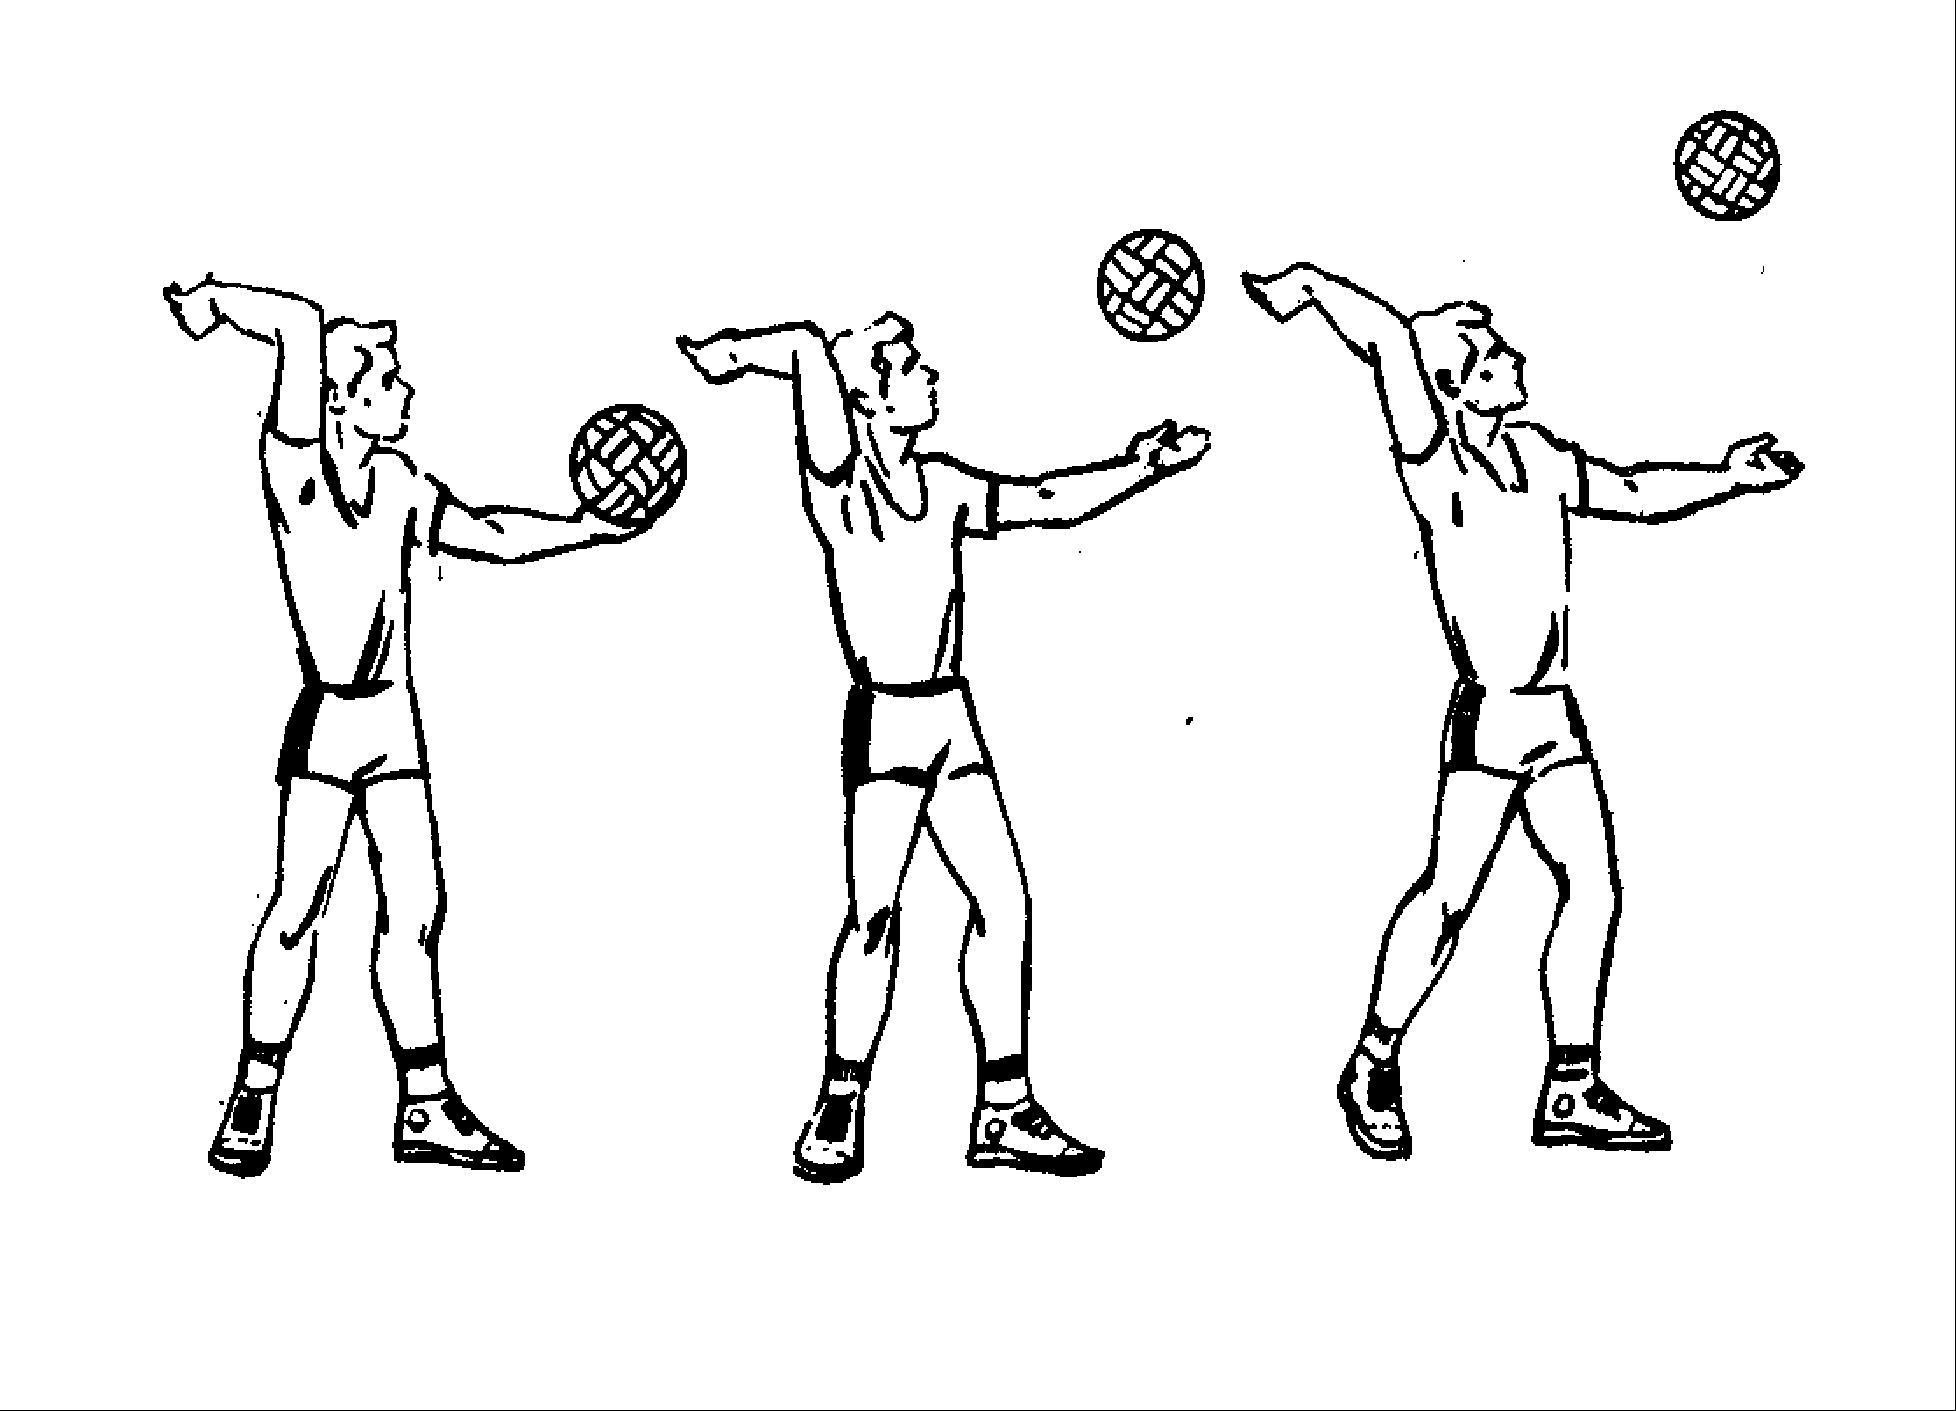 Удар вводящий мяч в игру. Техника выполнения верхней подачи мяча в волейболе. Верхняя прямая подача мяча в волейболе техника выполнения. Техника игры в волейбол верхняя подача. Передача мяча сбоку в волейболе.